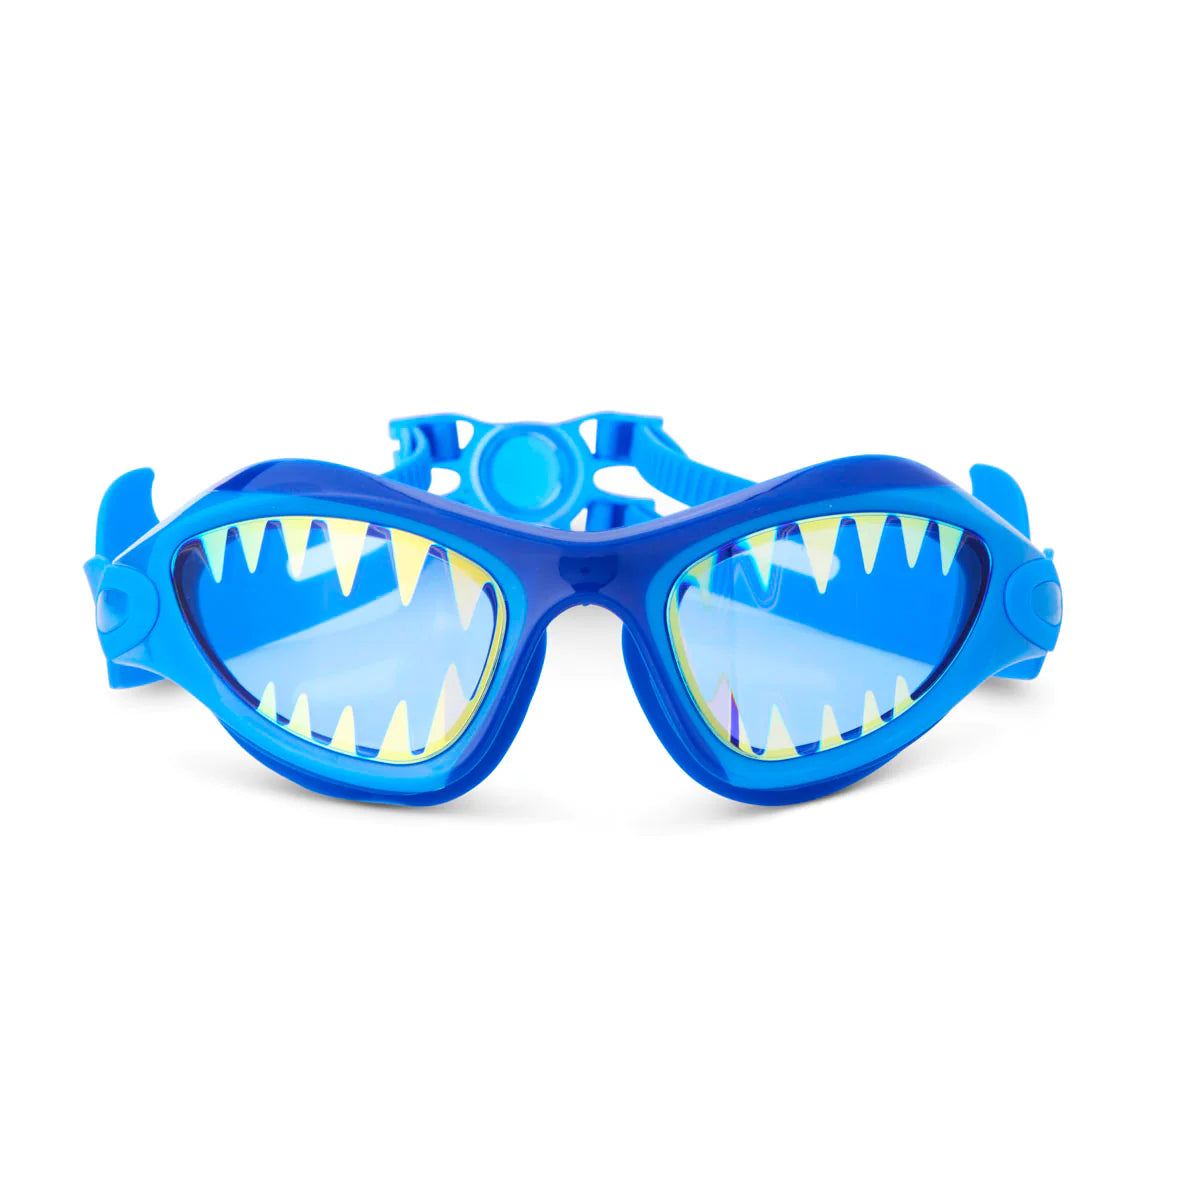 Megamouth Shark Goggles